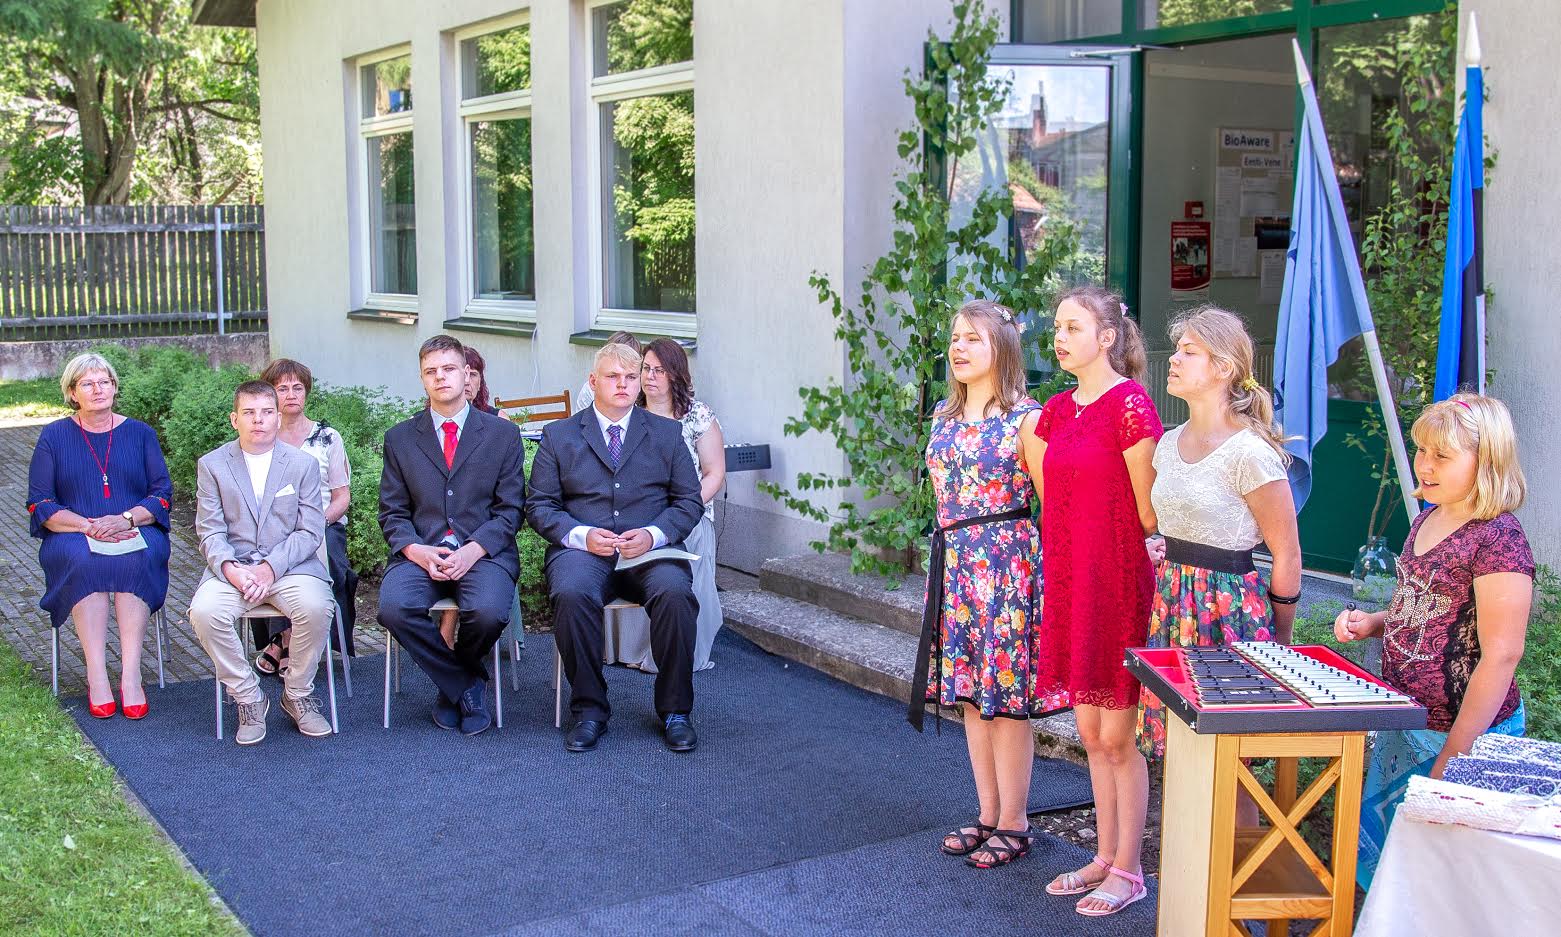 Võru Järve koolis lõpetati kooliaasta 11. juunil kooli hoovis. Külalistena olid oodatud lõpetajate pereliikmed. Foto: AIGAR NAGEL